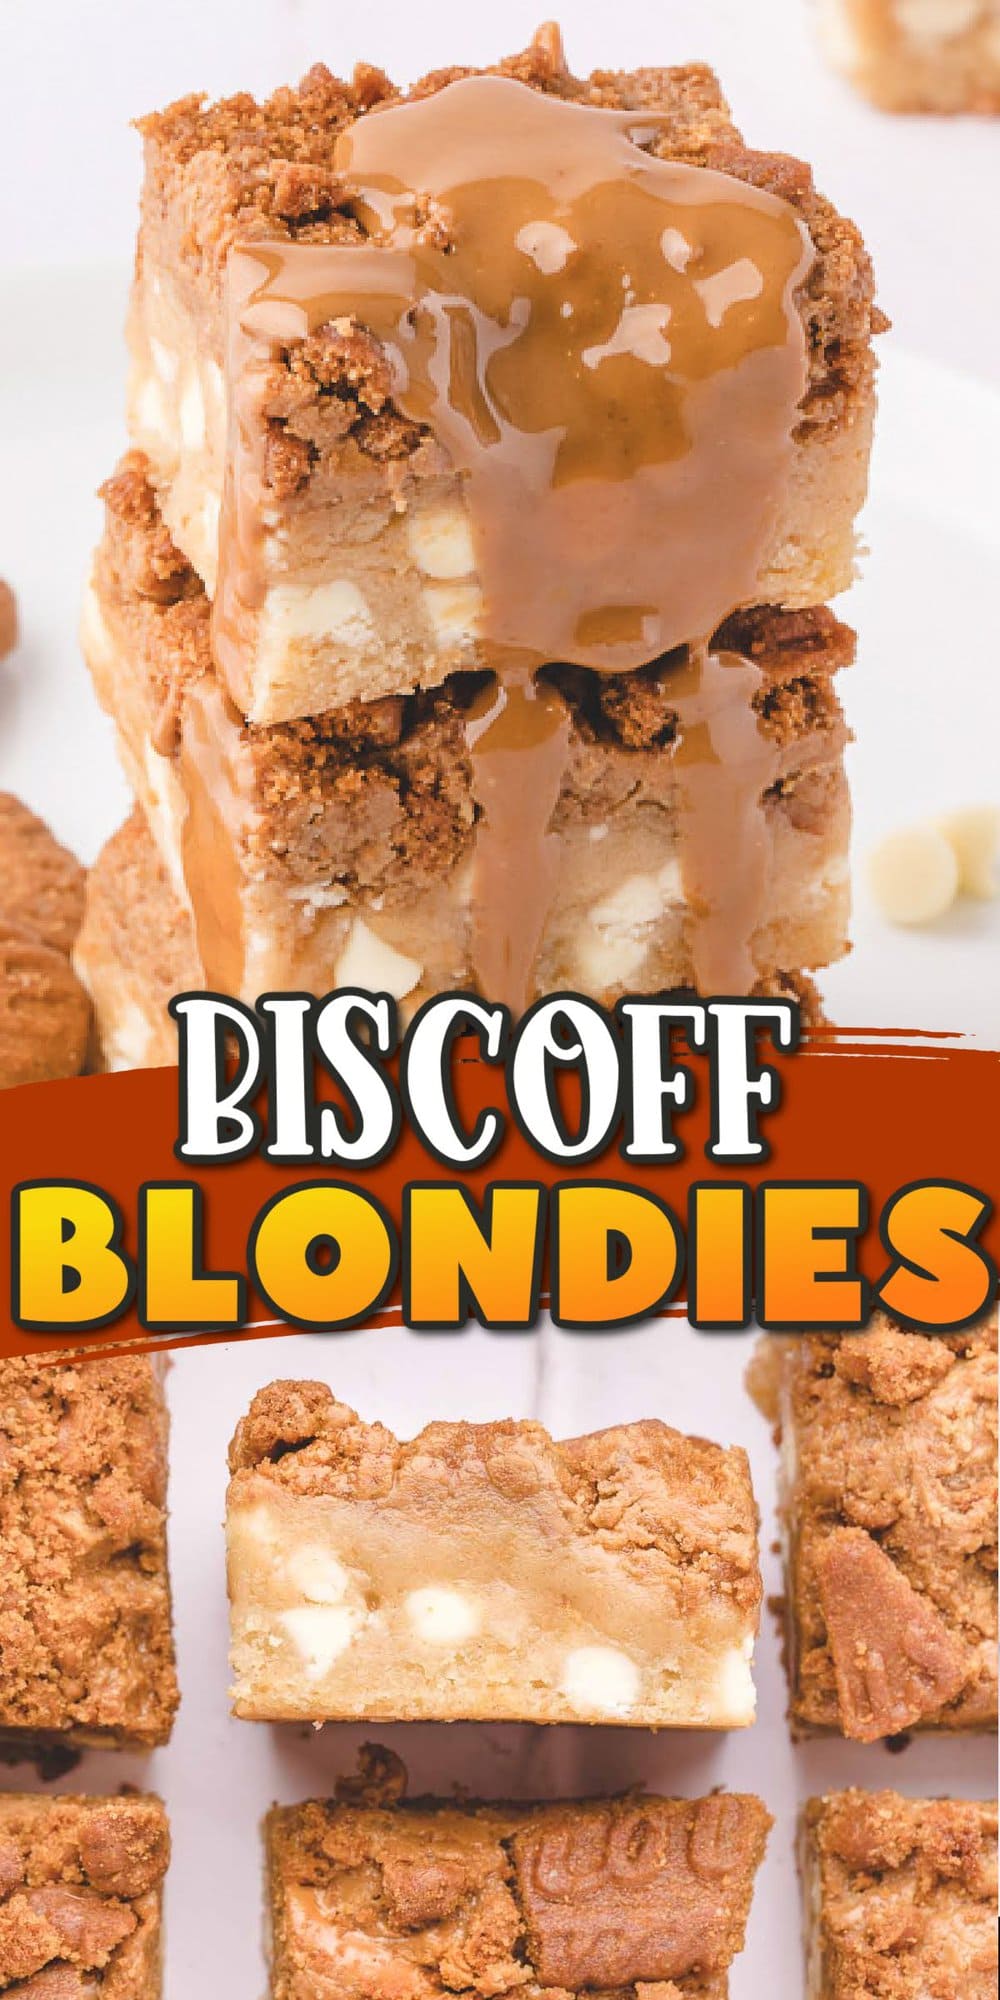 Biscoff Blondie pinterest